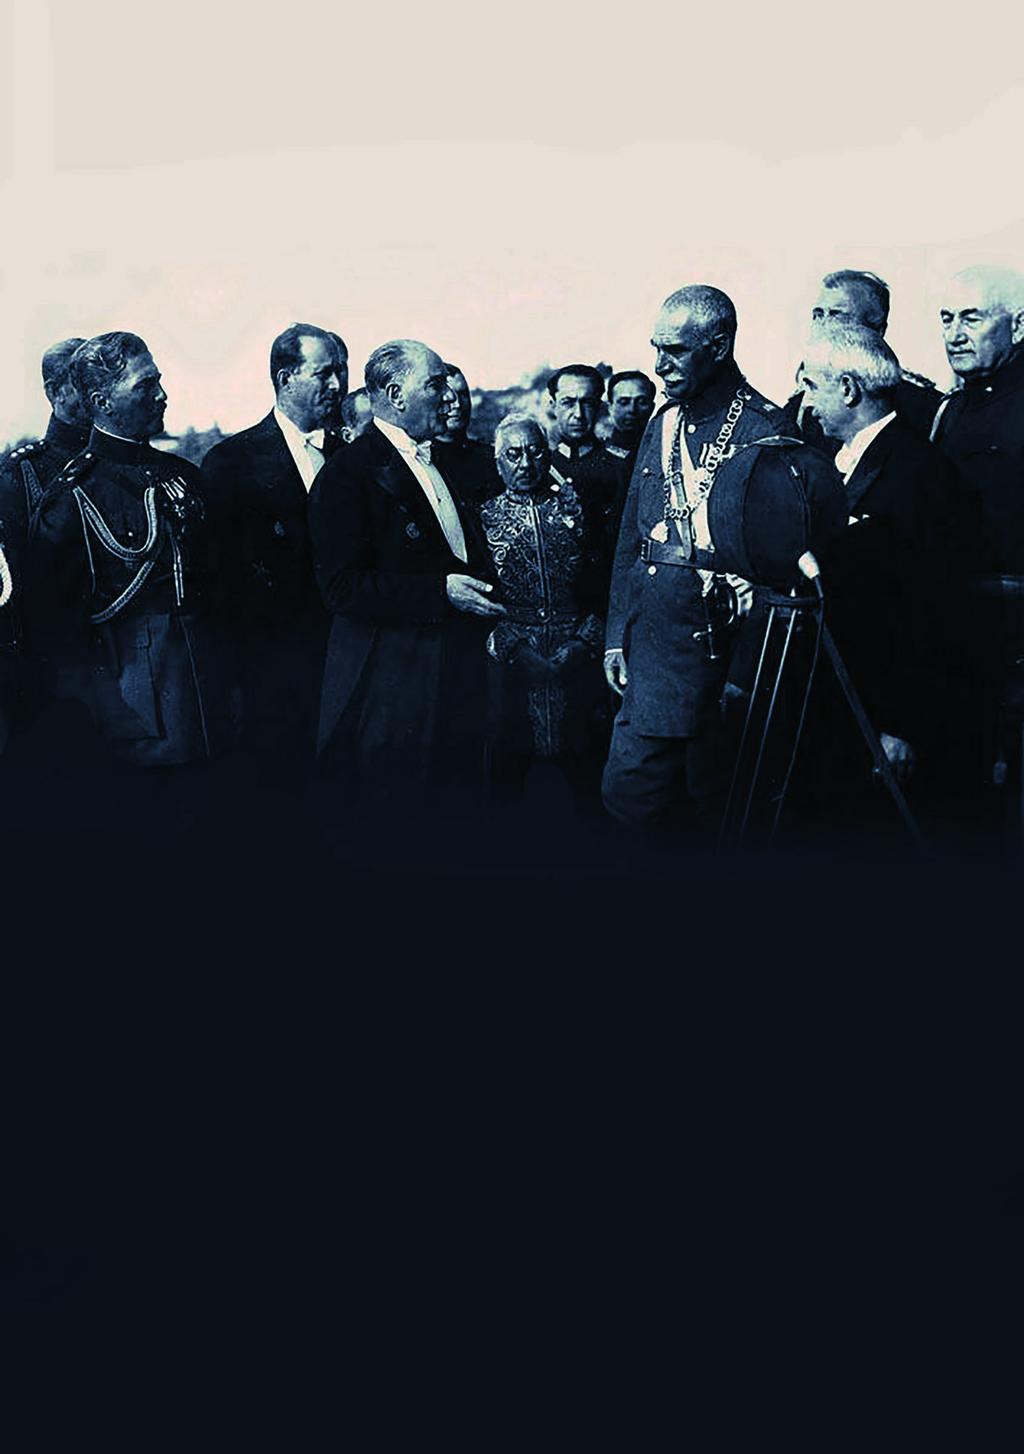 Gençliğin Dünyası Kaya Boztepe ATATÜRK VE DIŞ POLİTİKA 4 Şubat 1919 tarihinde Alemdar gazetesinin yazarlarından Refii Cevat, Mustafa Kemal Paşa ile Şişli deki